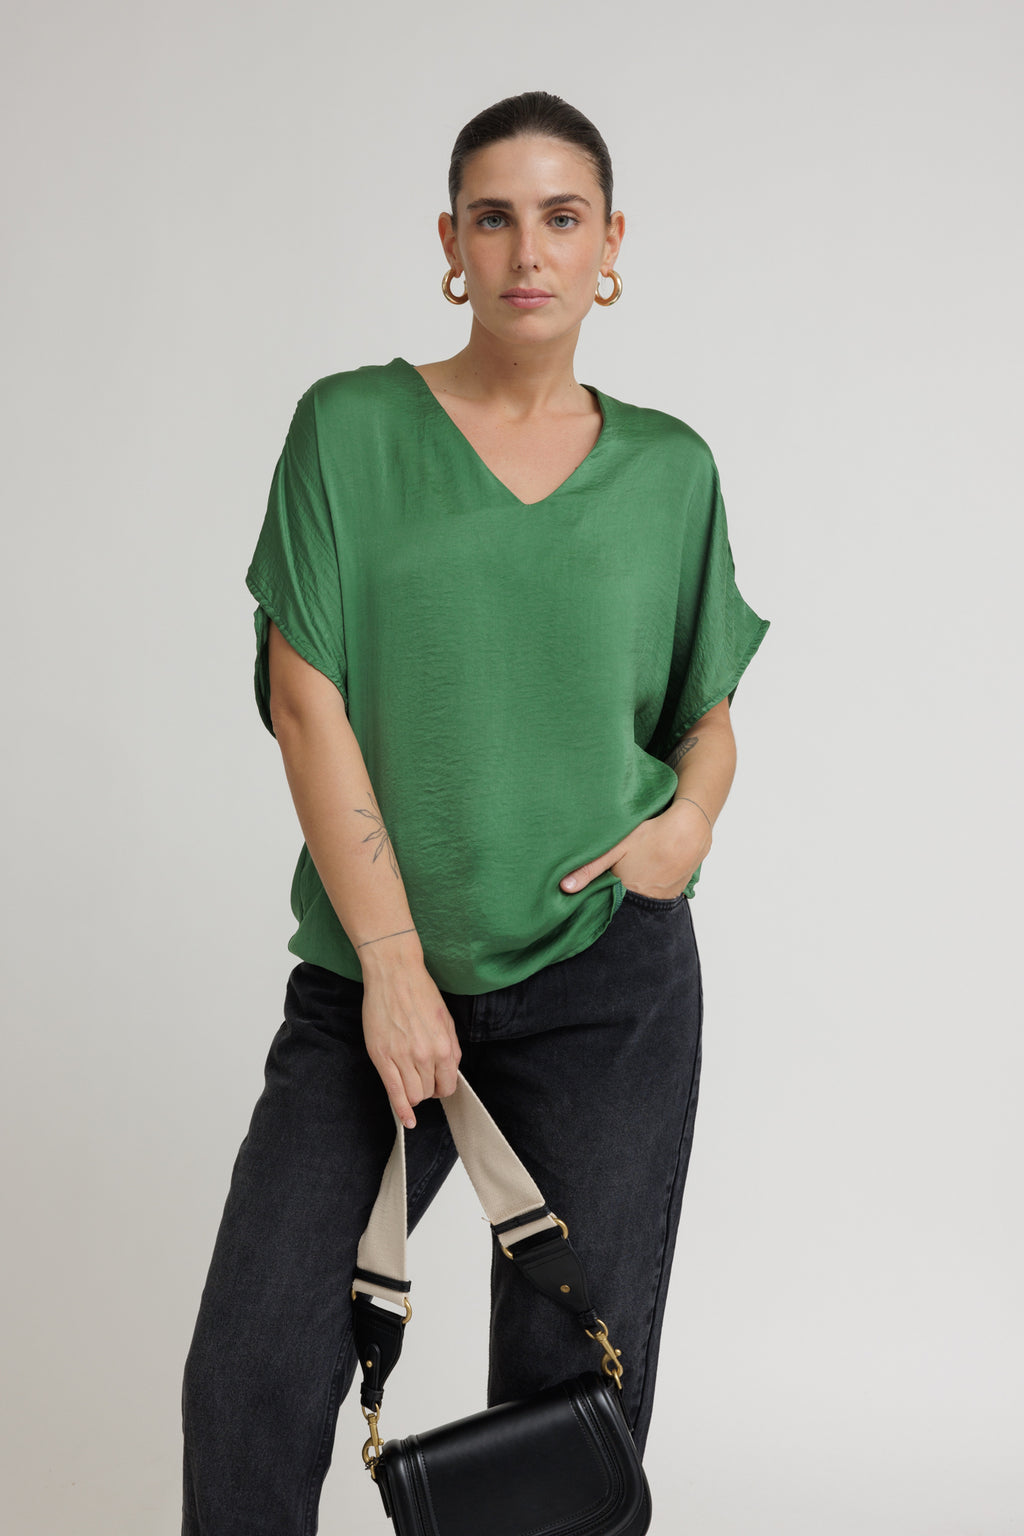 חולצת סאני ירוק